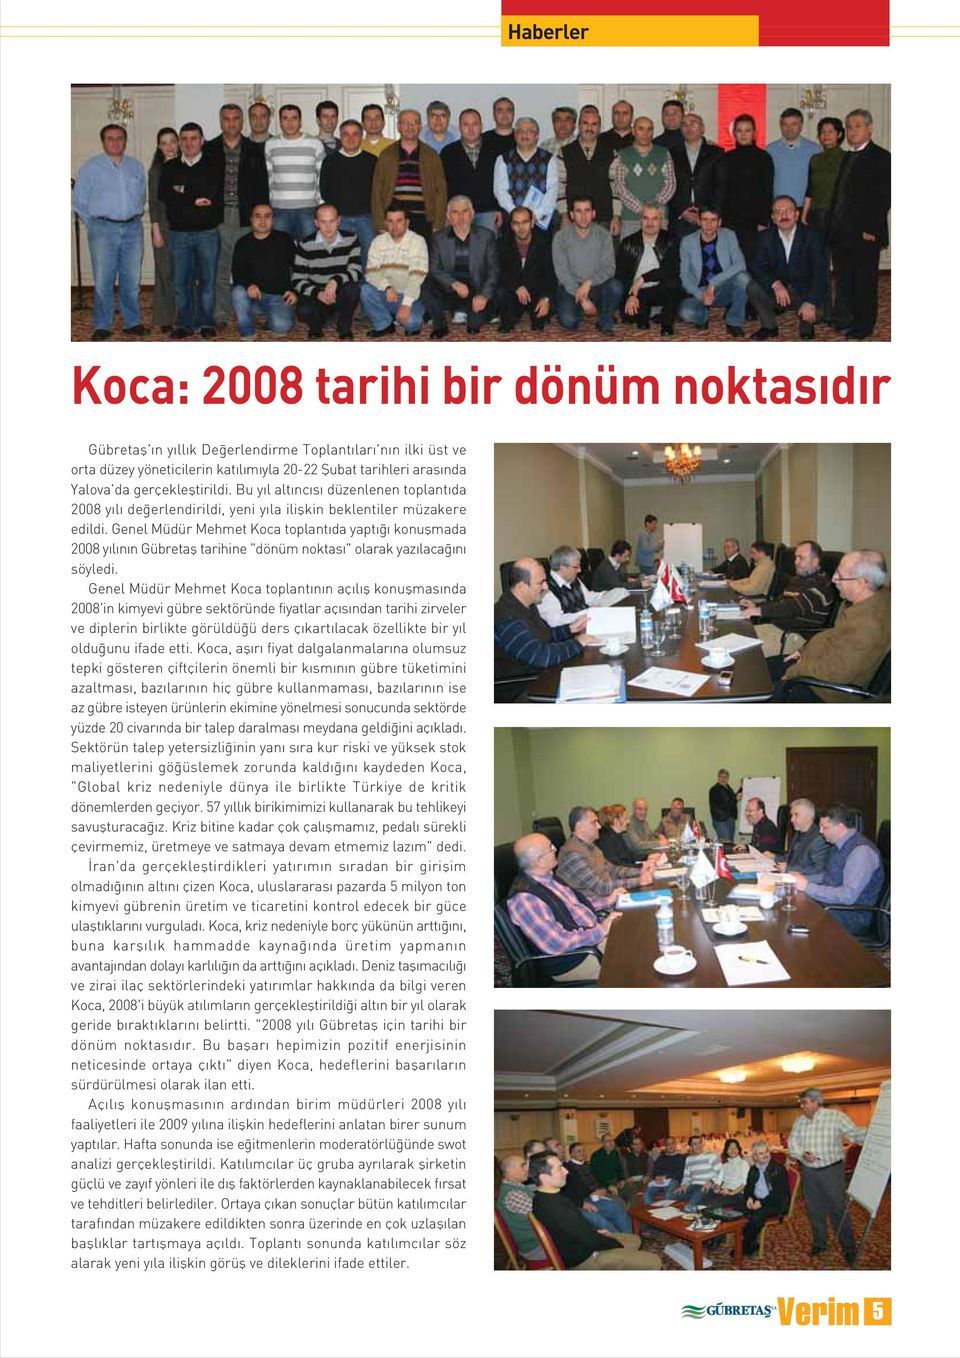 Genel Müdür Mehmet Koca toplant da yapt konuflmada y l n n Gübretafl tarihine "dönüm noktas " olarak yaz laca n söyledi.